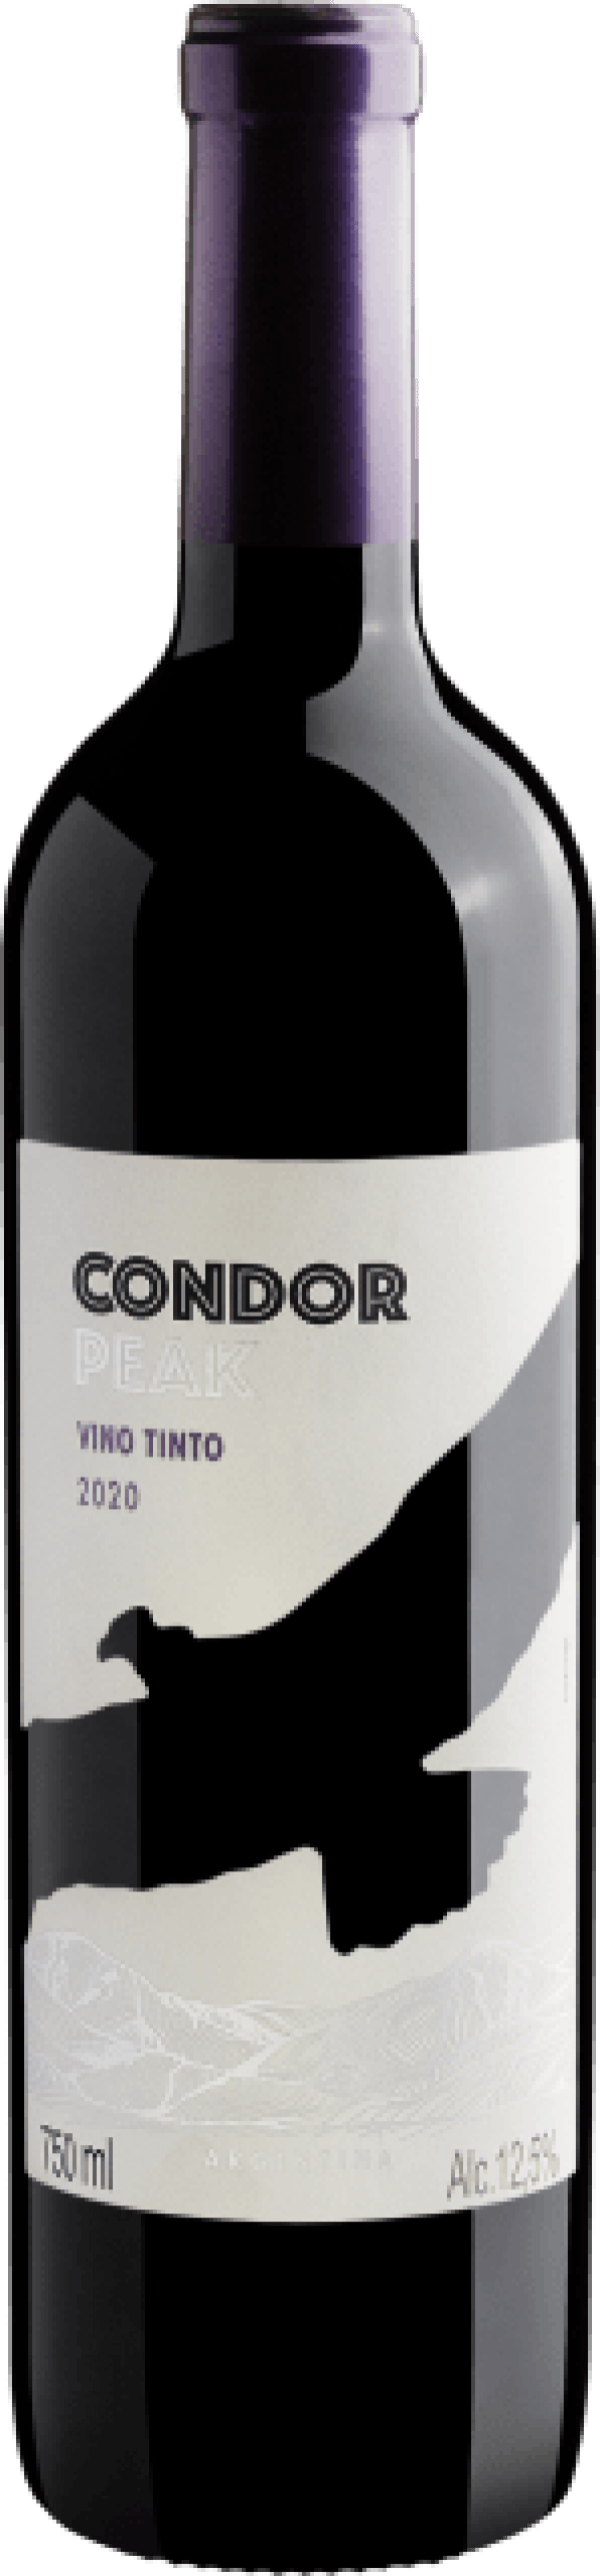 Condor Peak Red Dry 2020